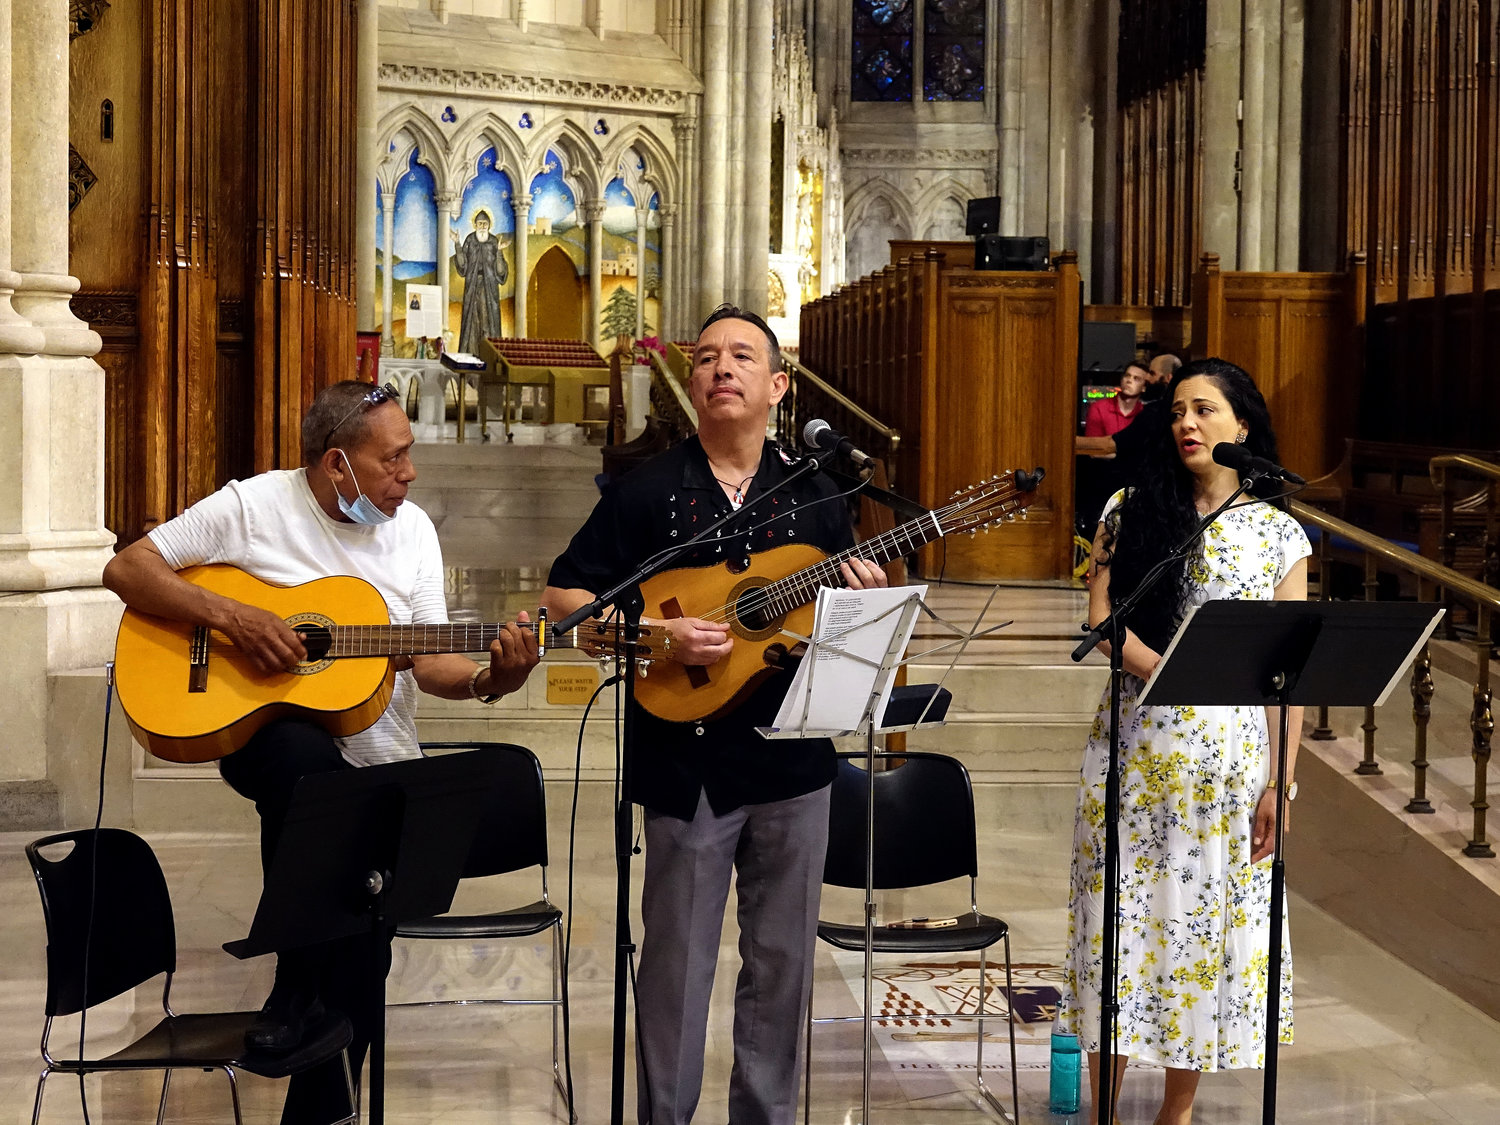 Miembros del coro proporcionan música el 6 de junio durante la misa del Día Nacional Puertorriqueño en la Catedral de San Patricio. Los miembros incluyeron a Samalie Alicea, a la derecha, quien cantó el Ave María.